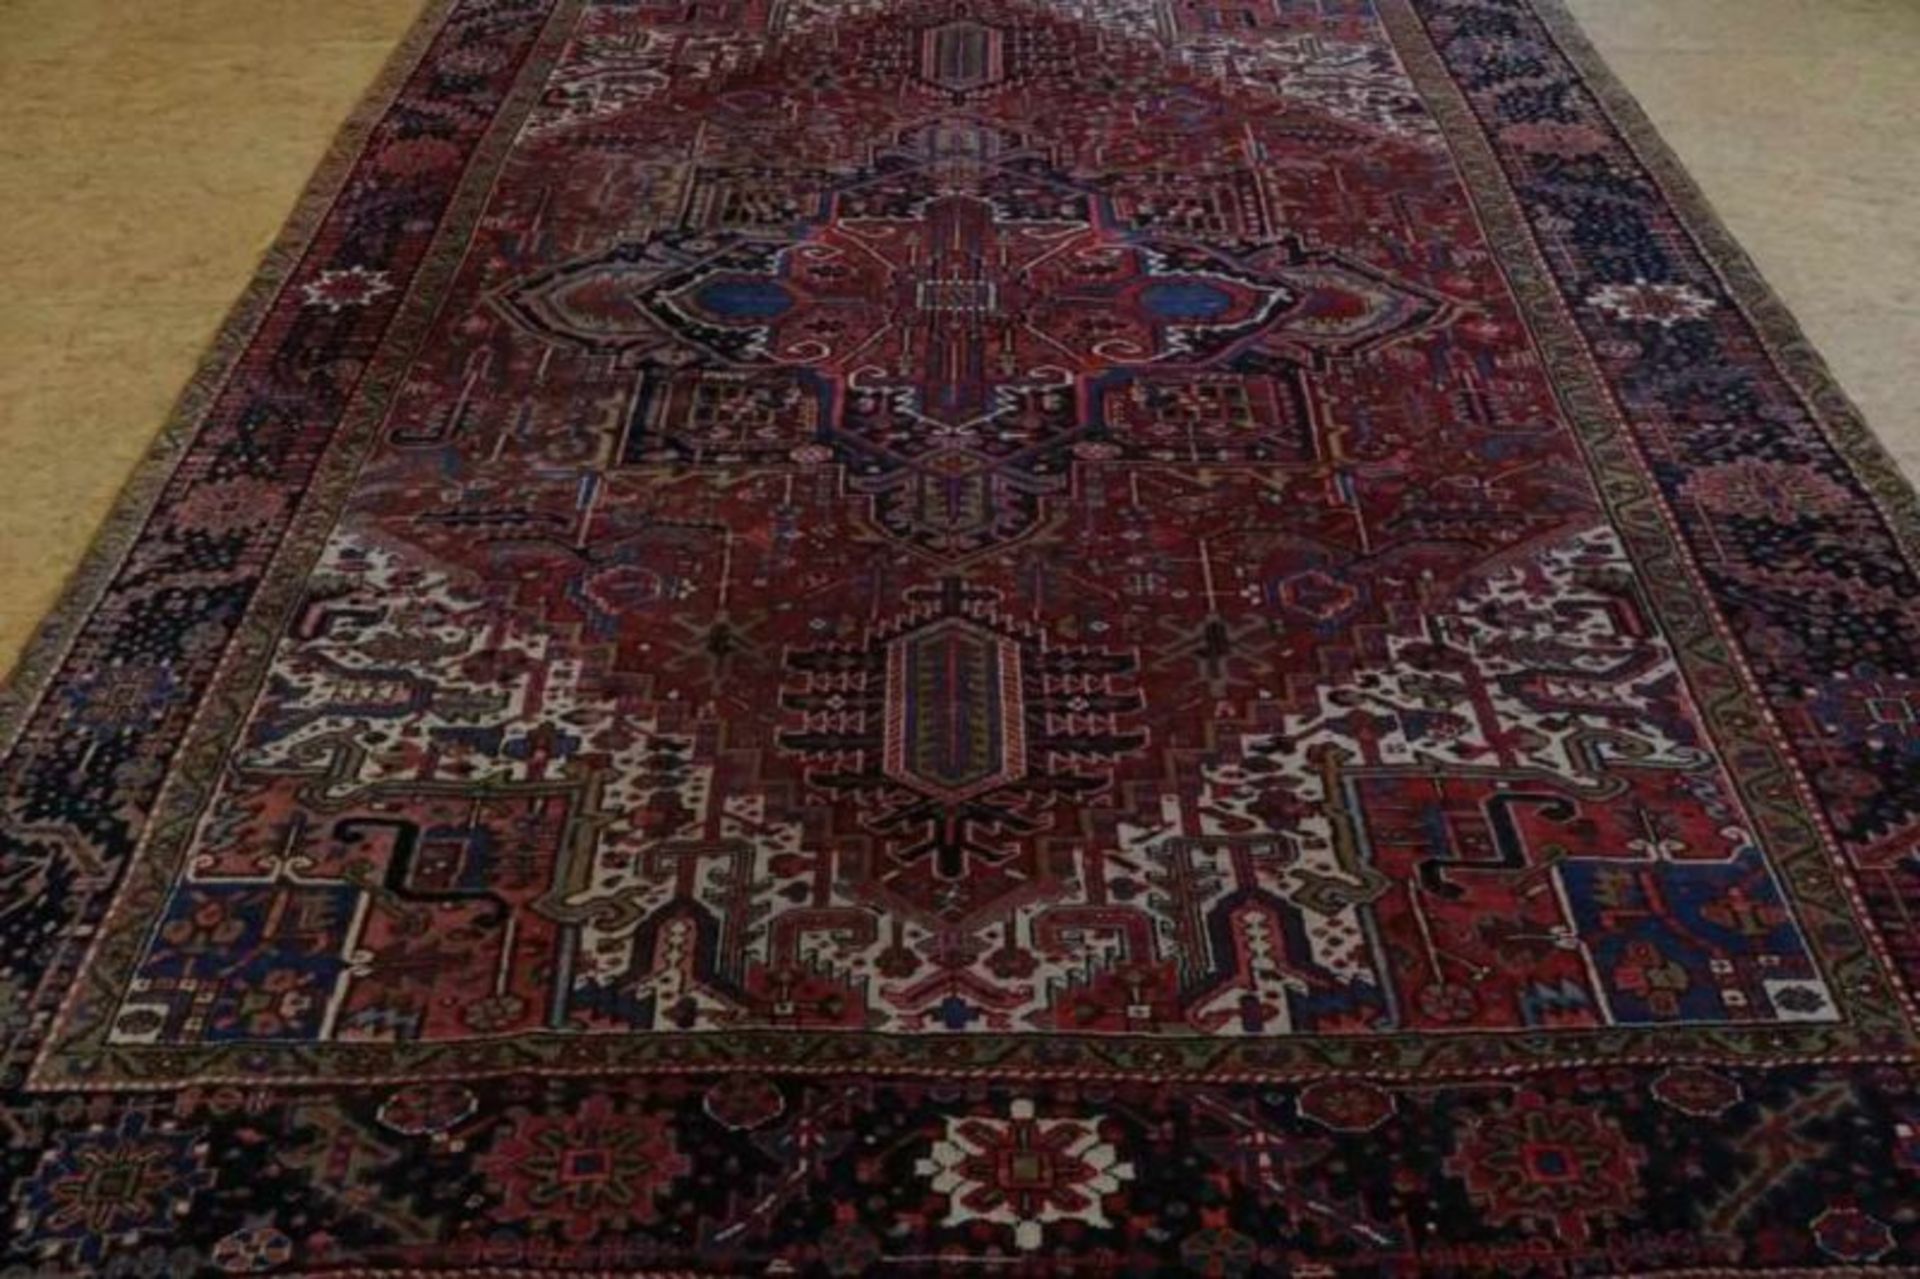 Tapijt, Heriz 390 x 297 cm.Carpet, Heriz 390 x 297 cm.